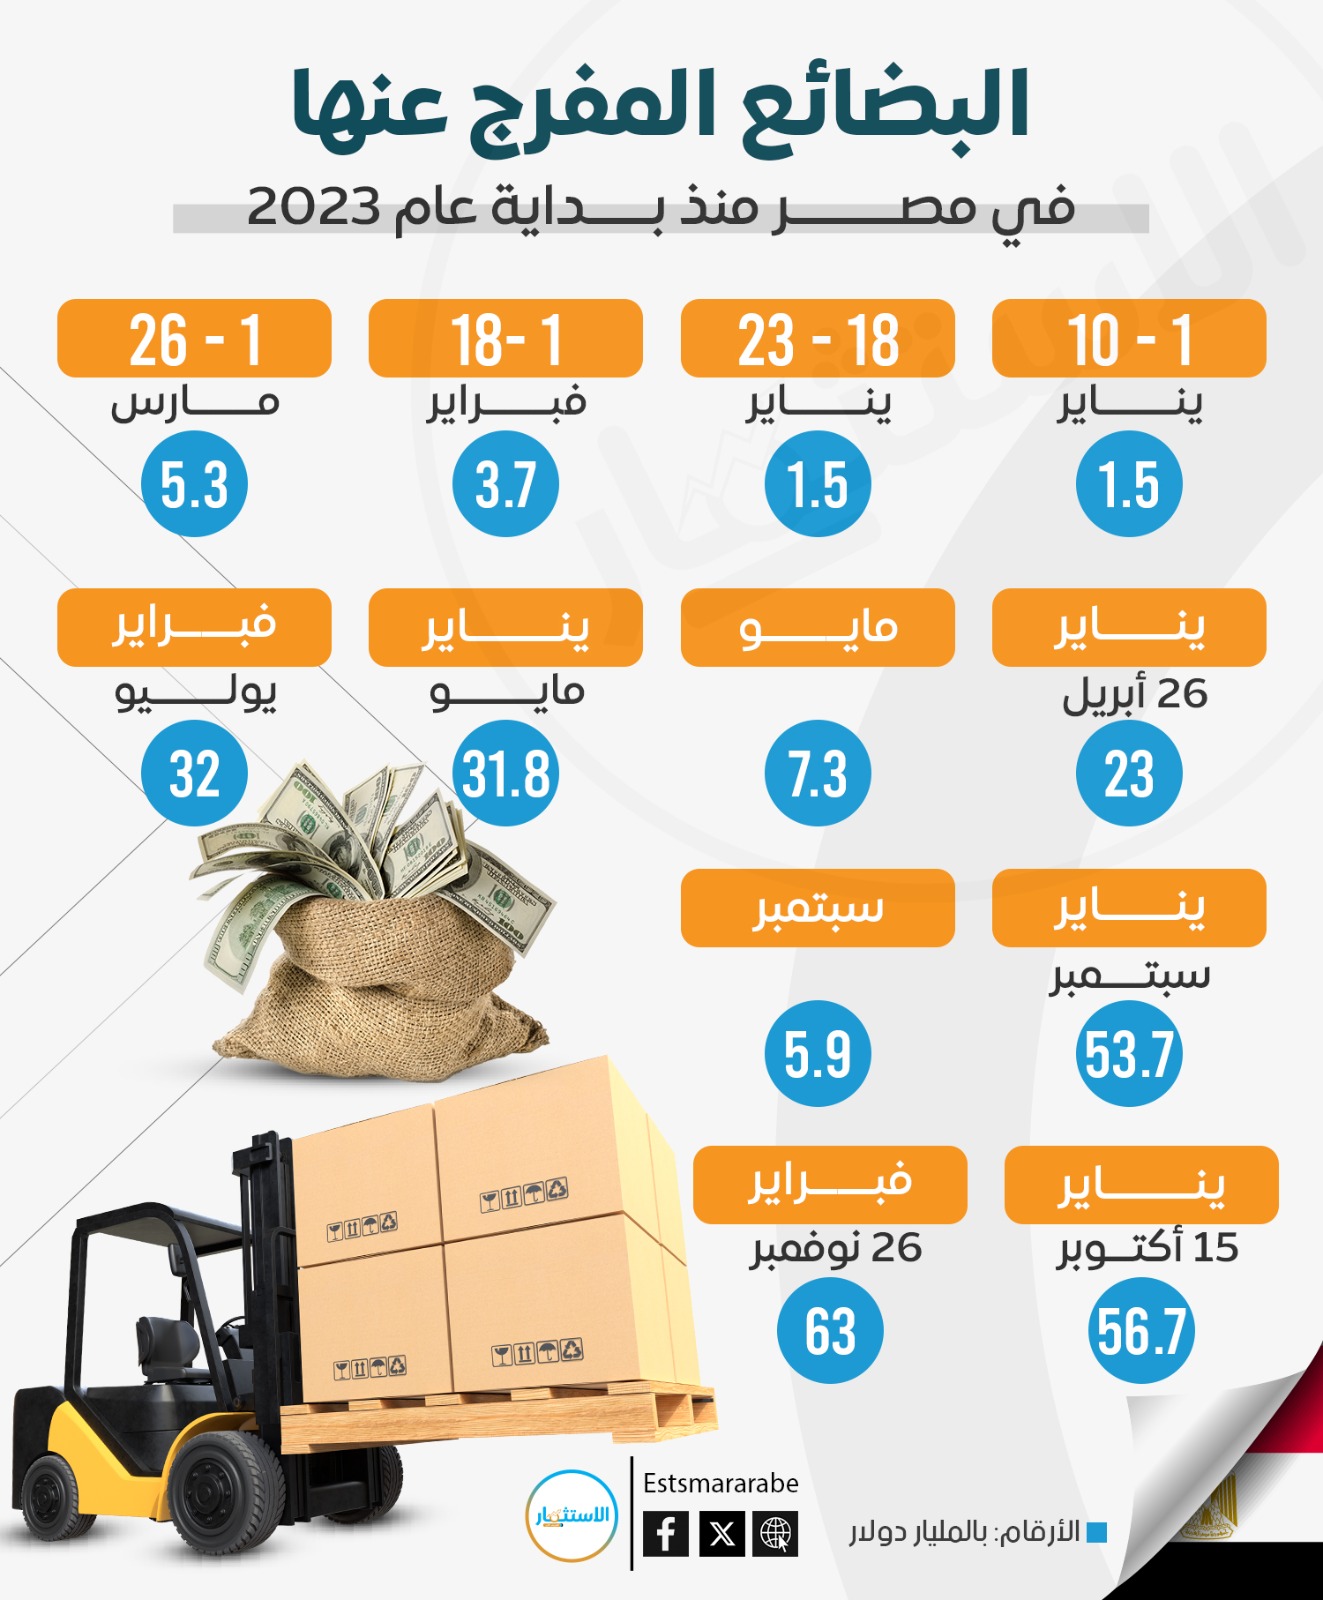 إنفوجرافيك|| البضائع المفرج عنها في مصر منذ بداية عام 2023